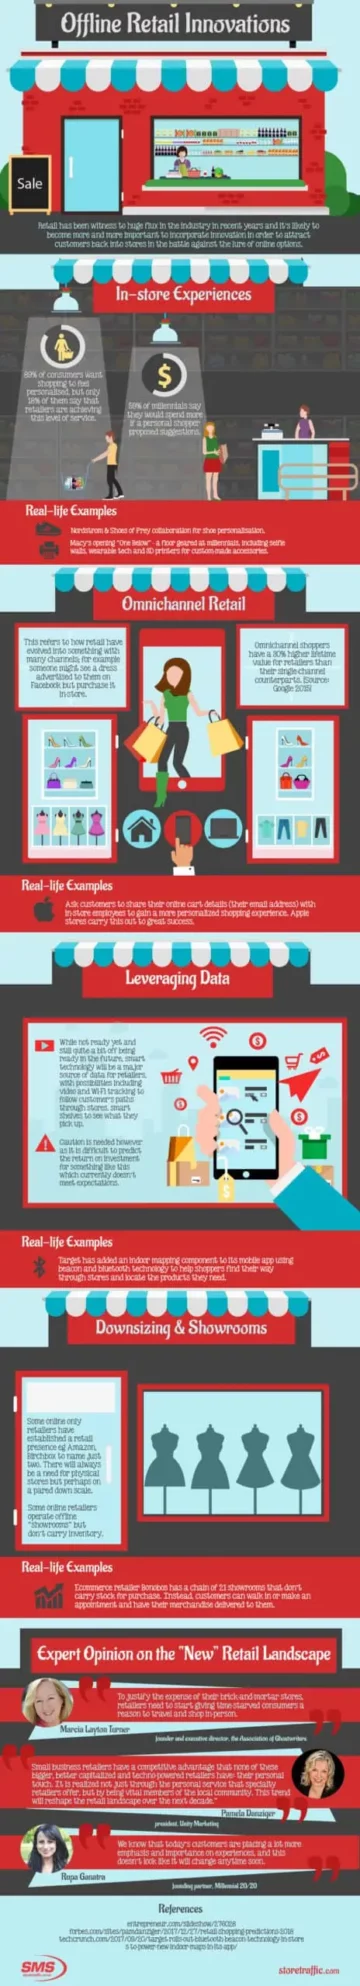 Inovacije v maloprodaji brez povezave! (Infografika) - Supply Chain Game Changer™